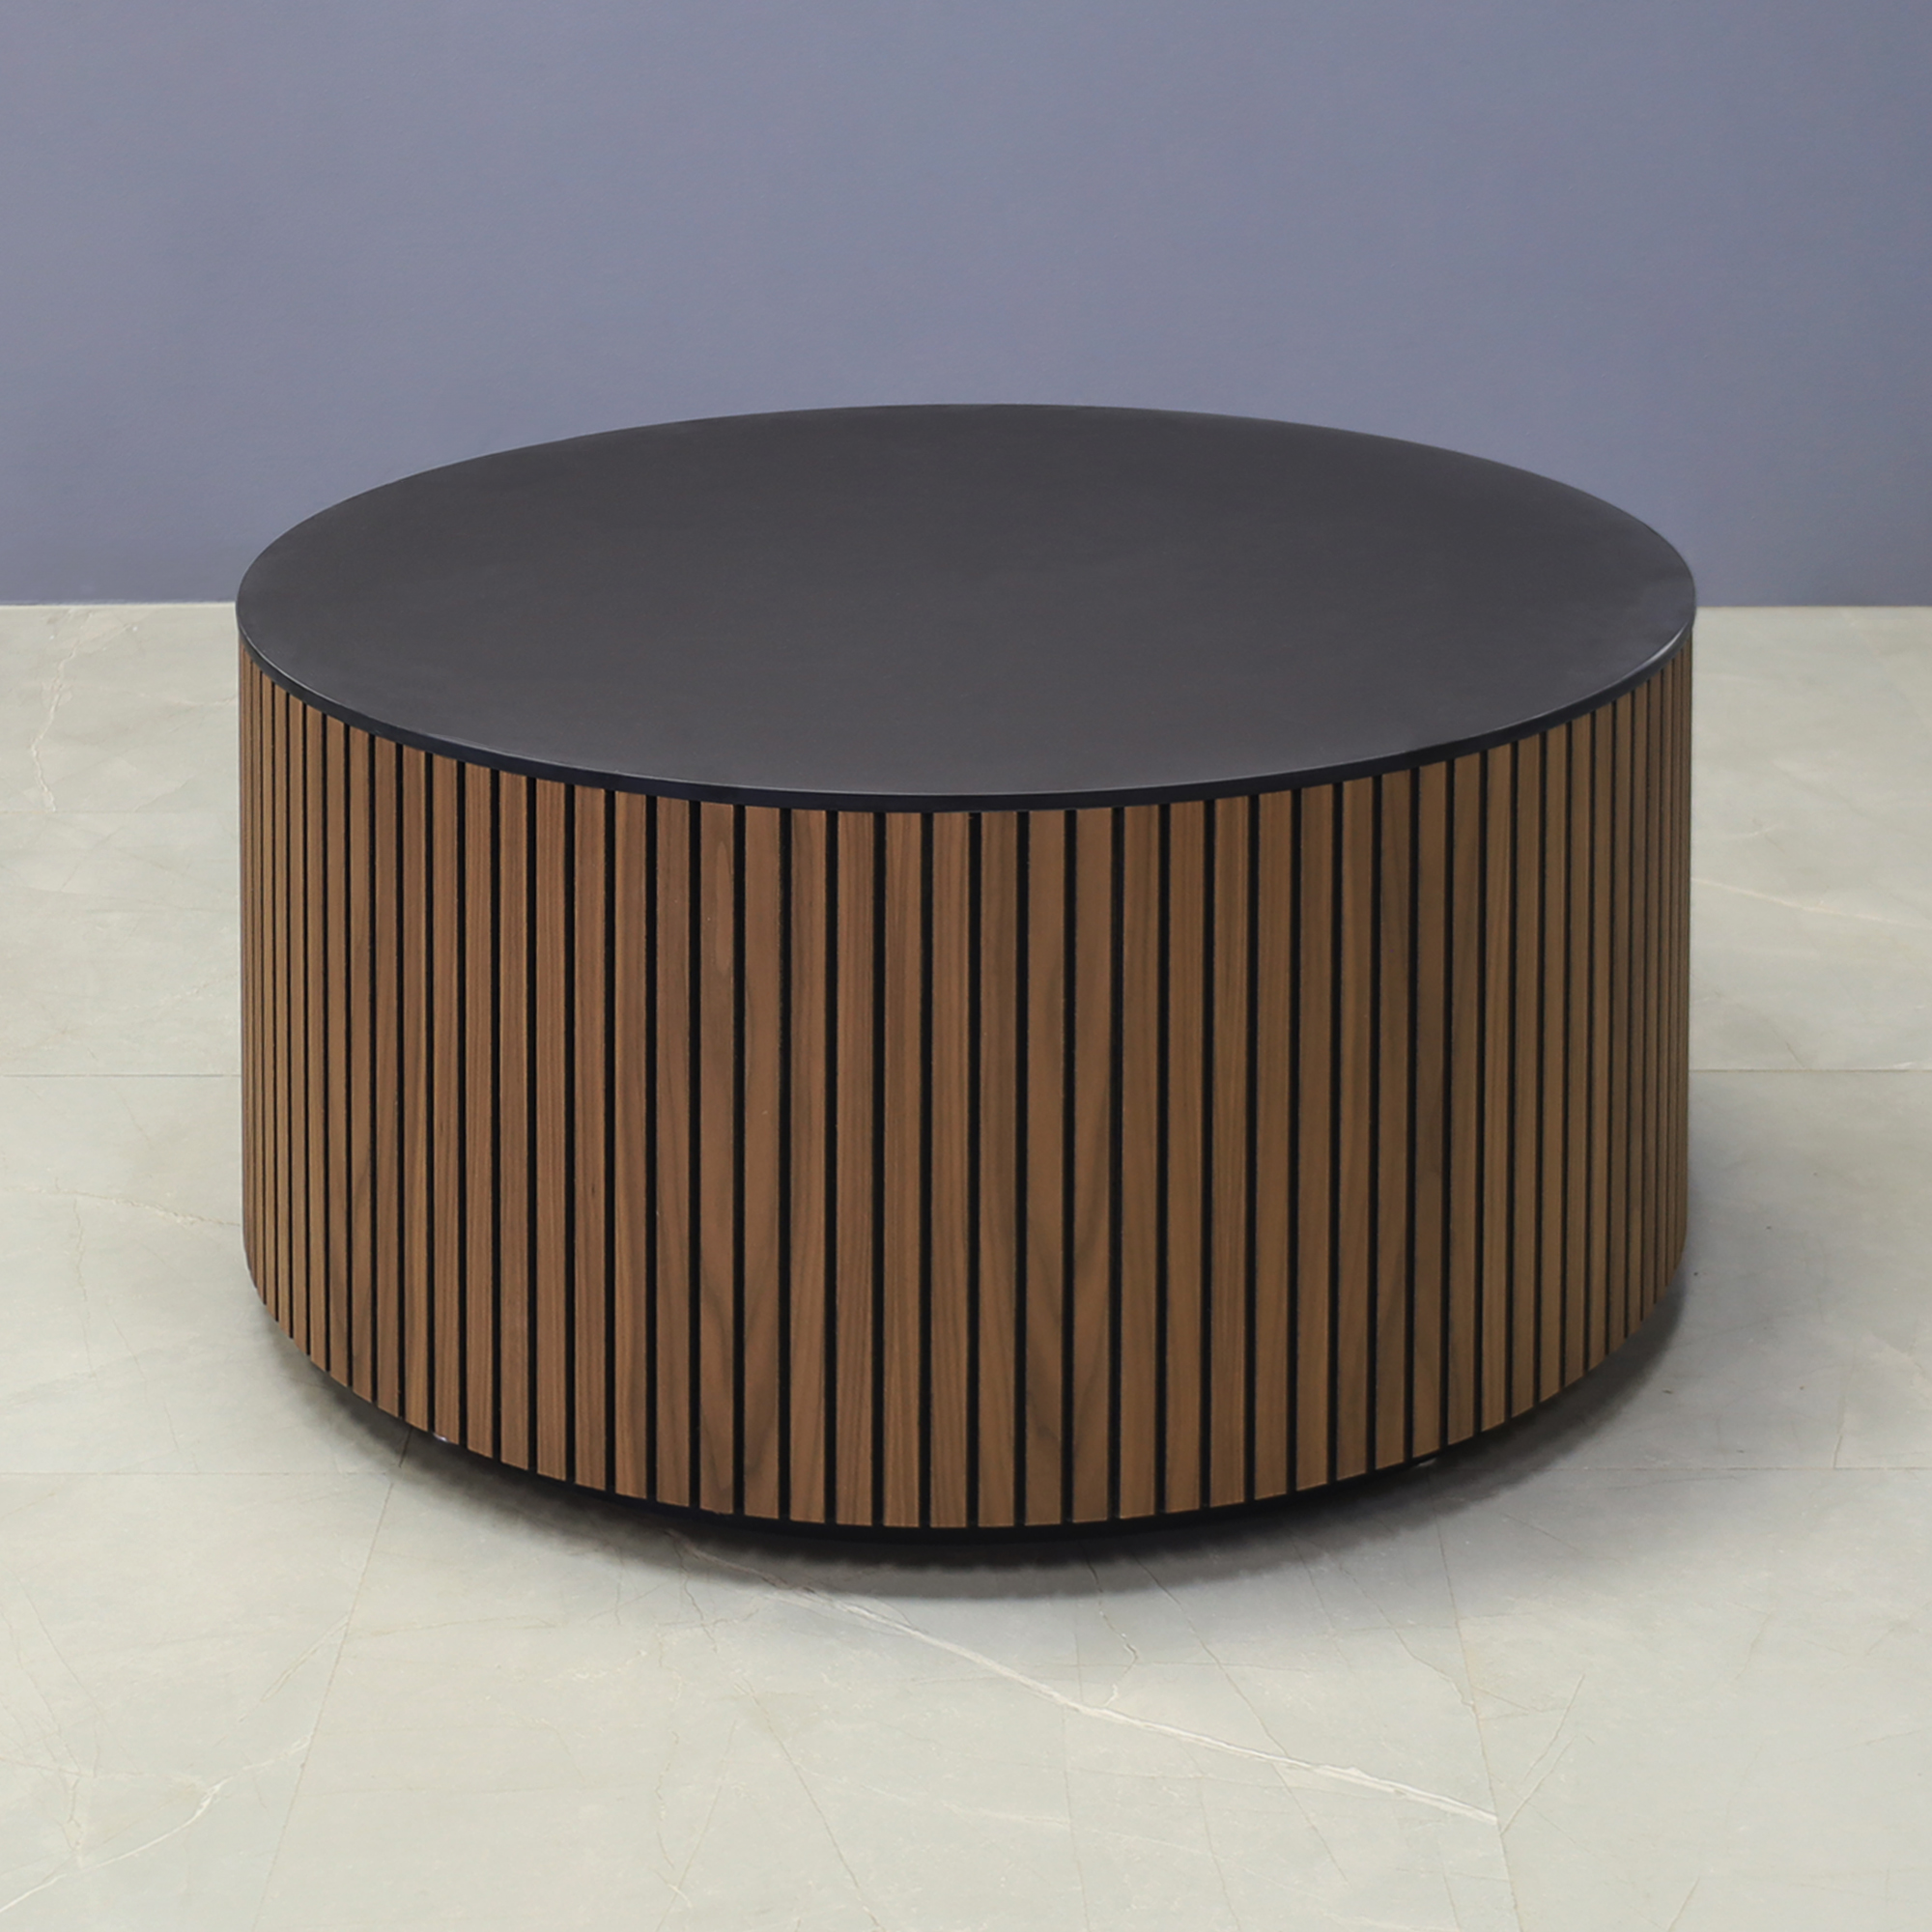 36-inch Nolrfolk Round Lobby Table in 1/2